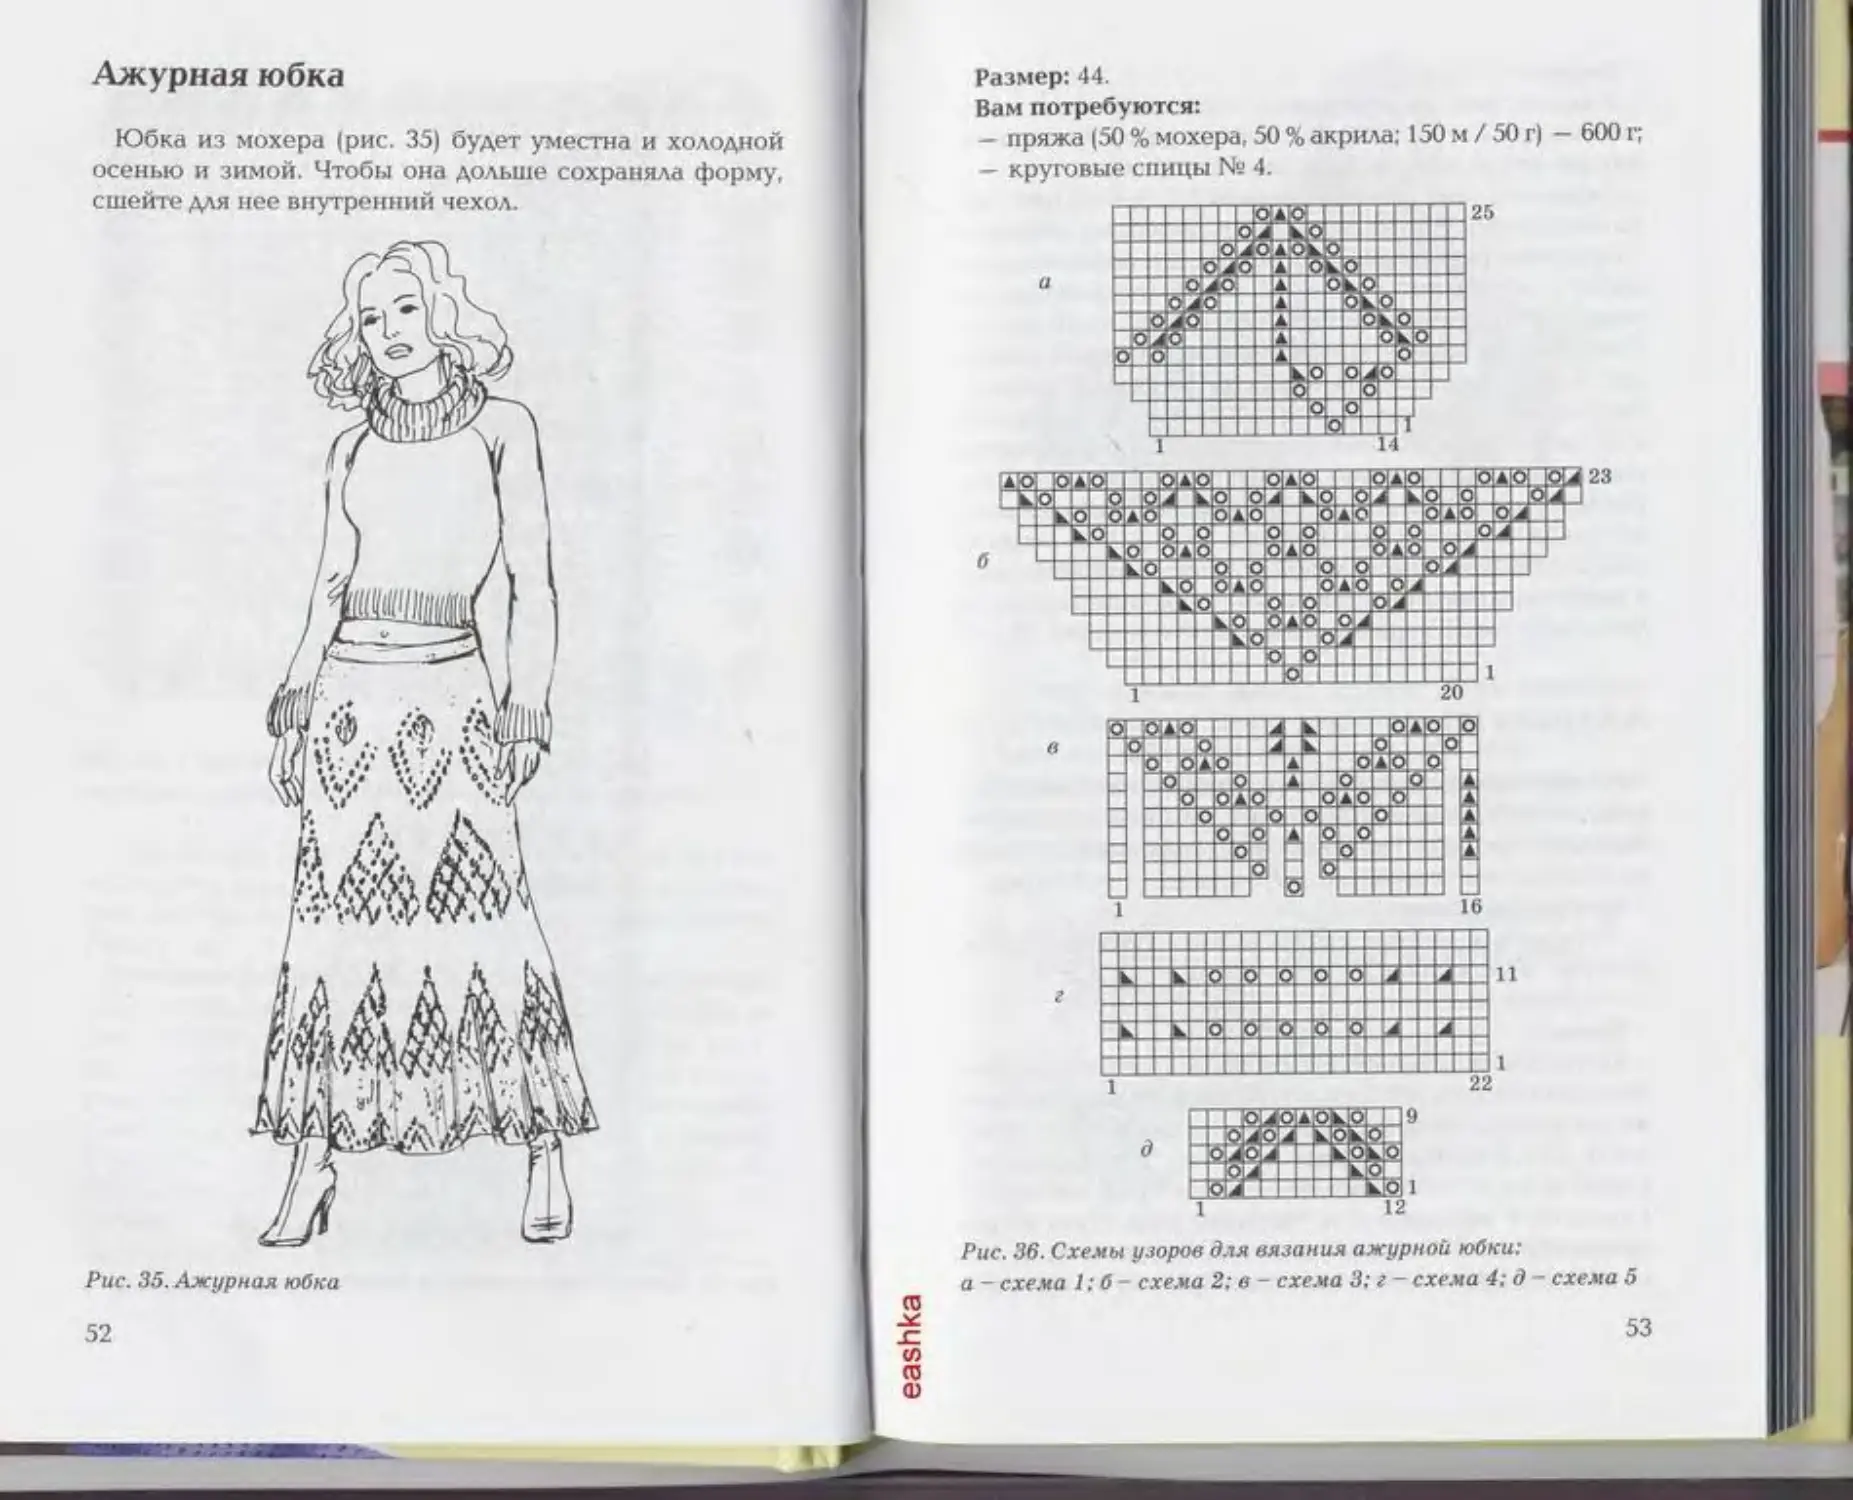 Ажурная длинная расклешенная юбка схема для спиц